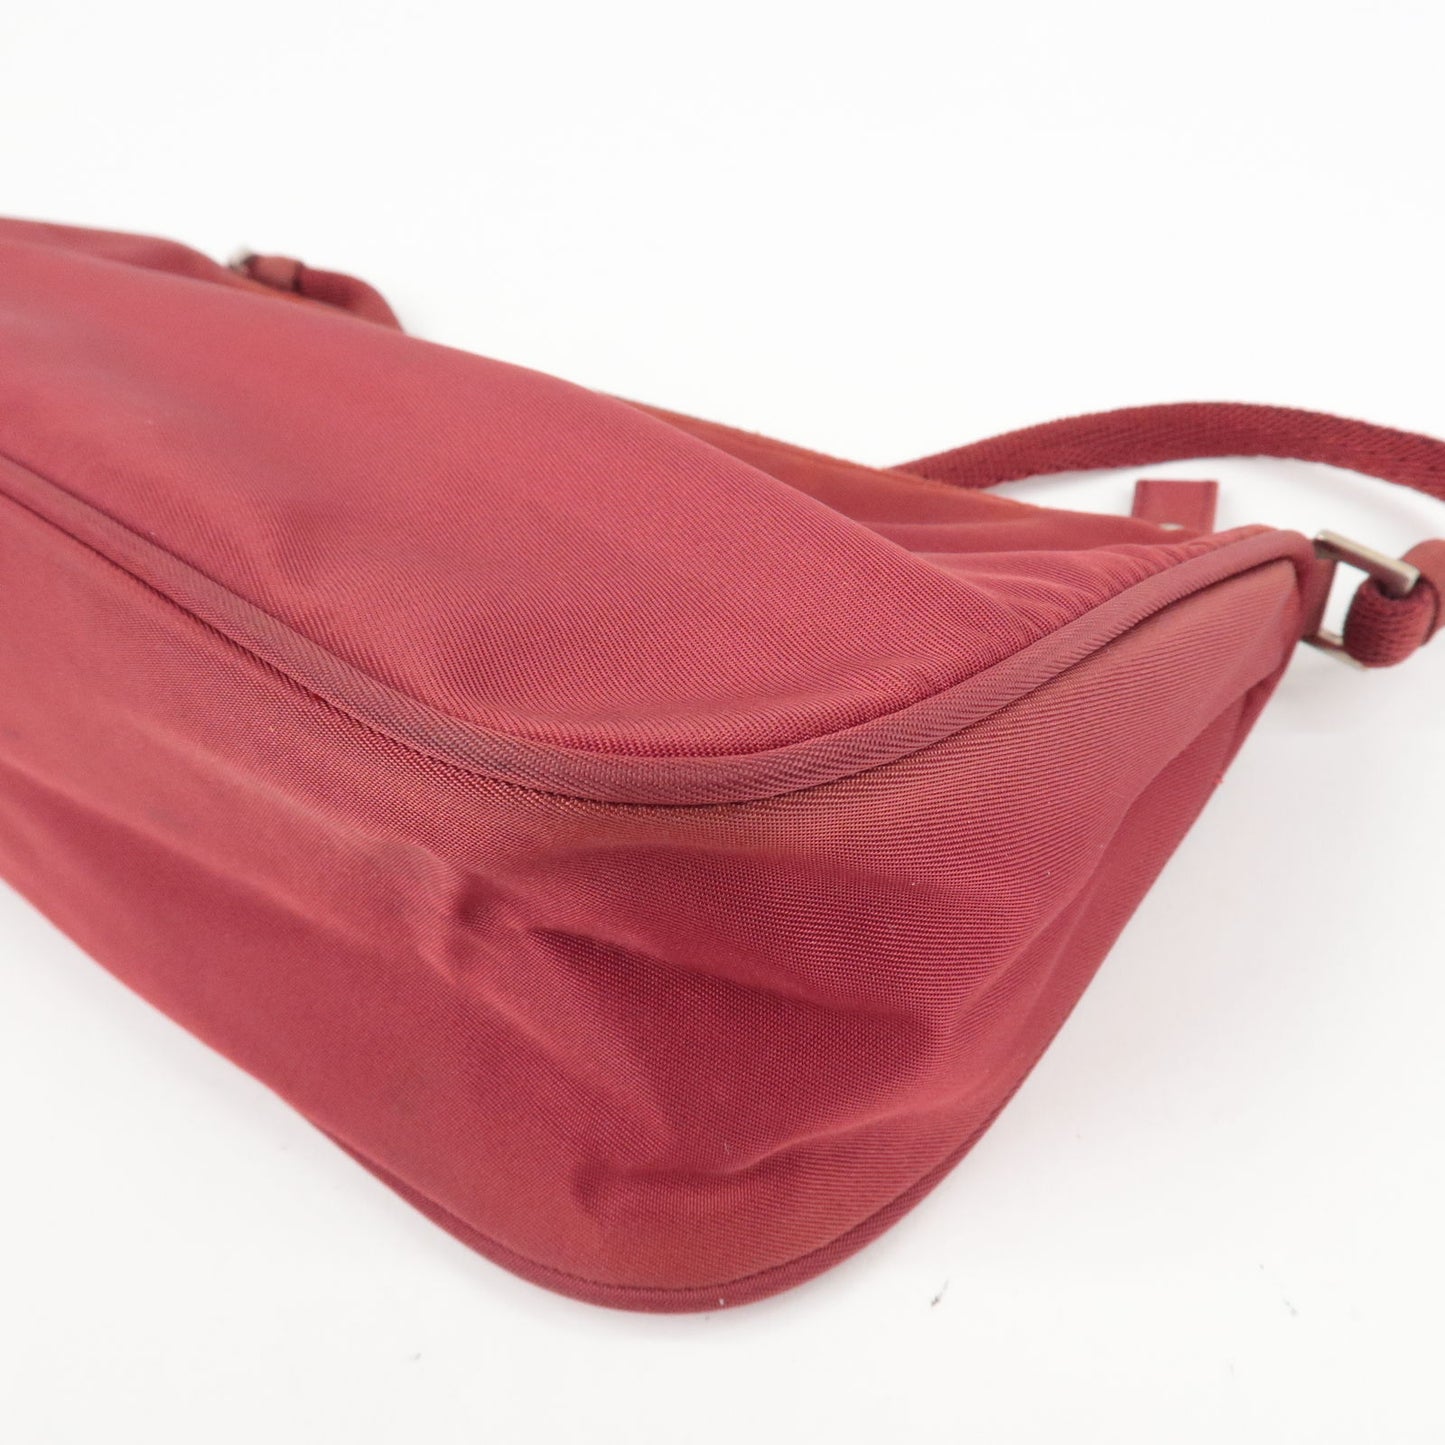 PRADA Logo Nylon Hand Bag Shoulder Bag Pouch Purse Red